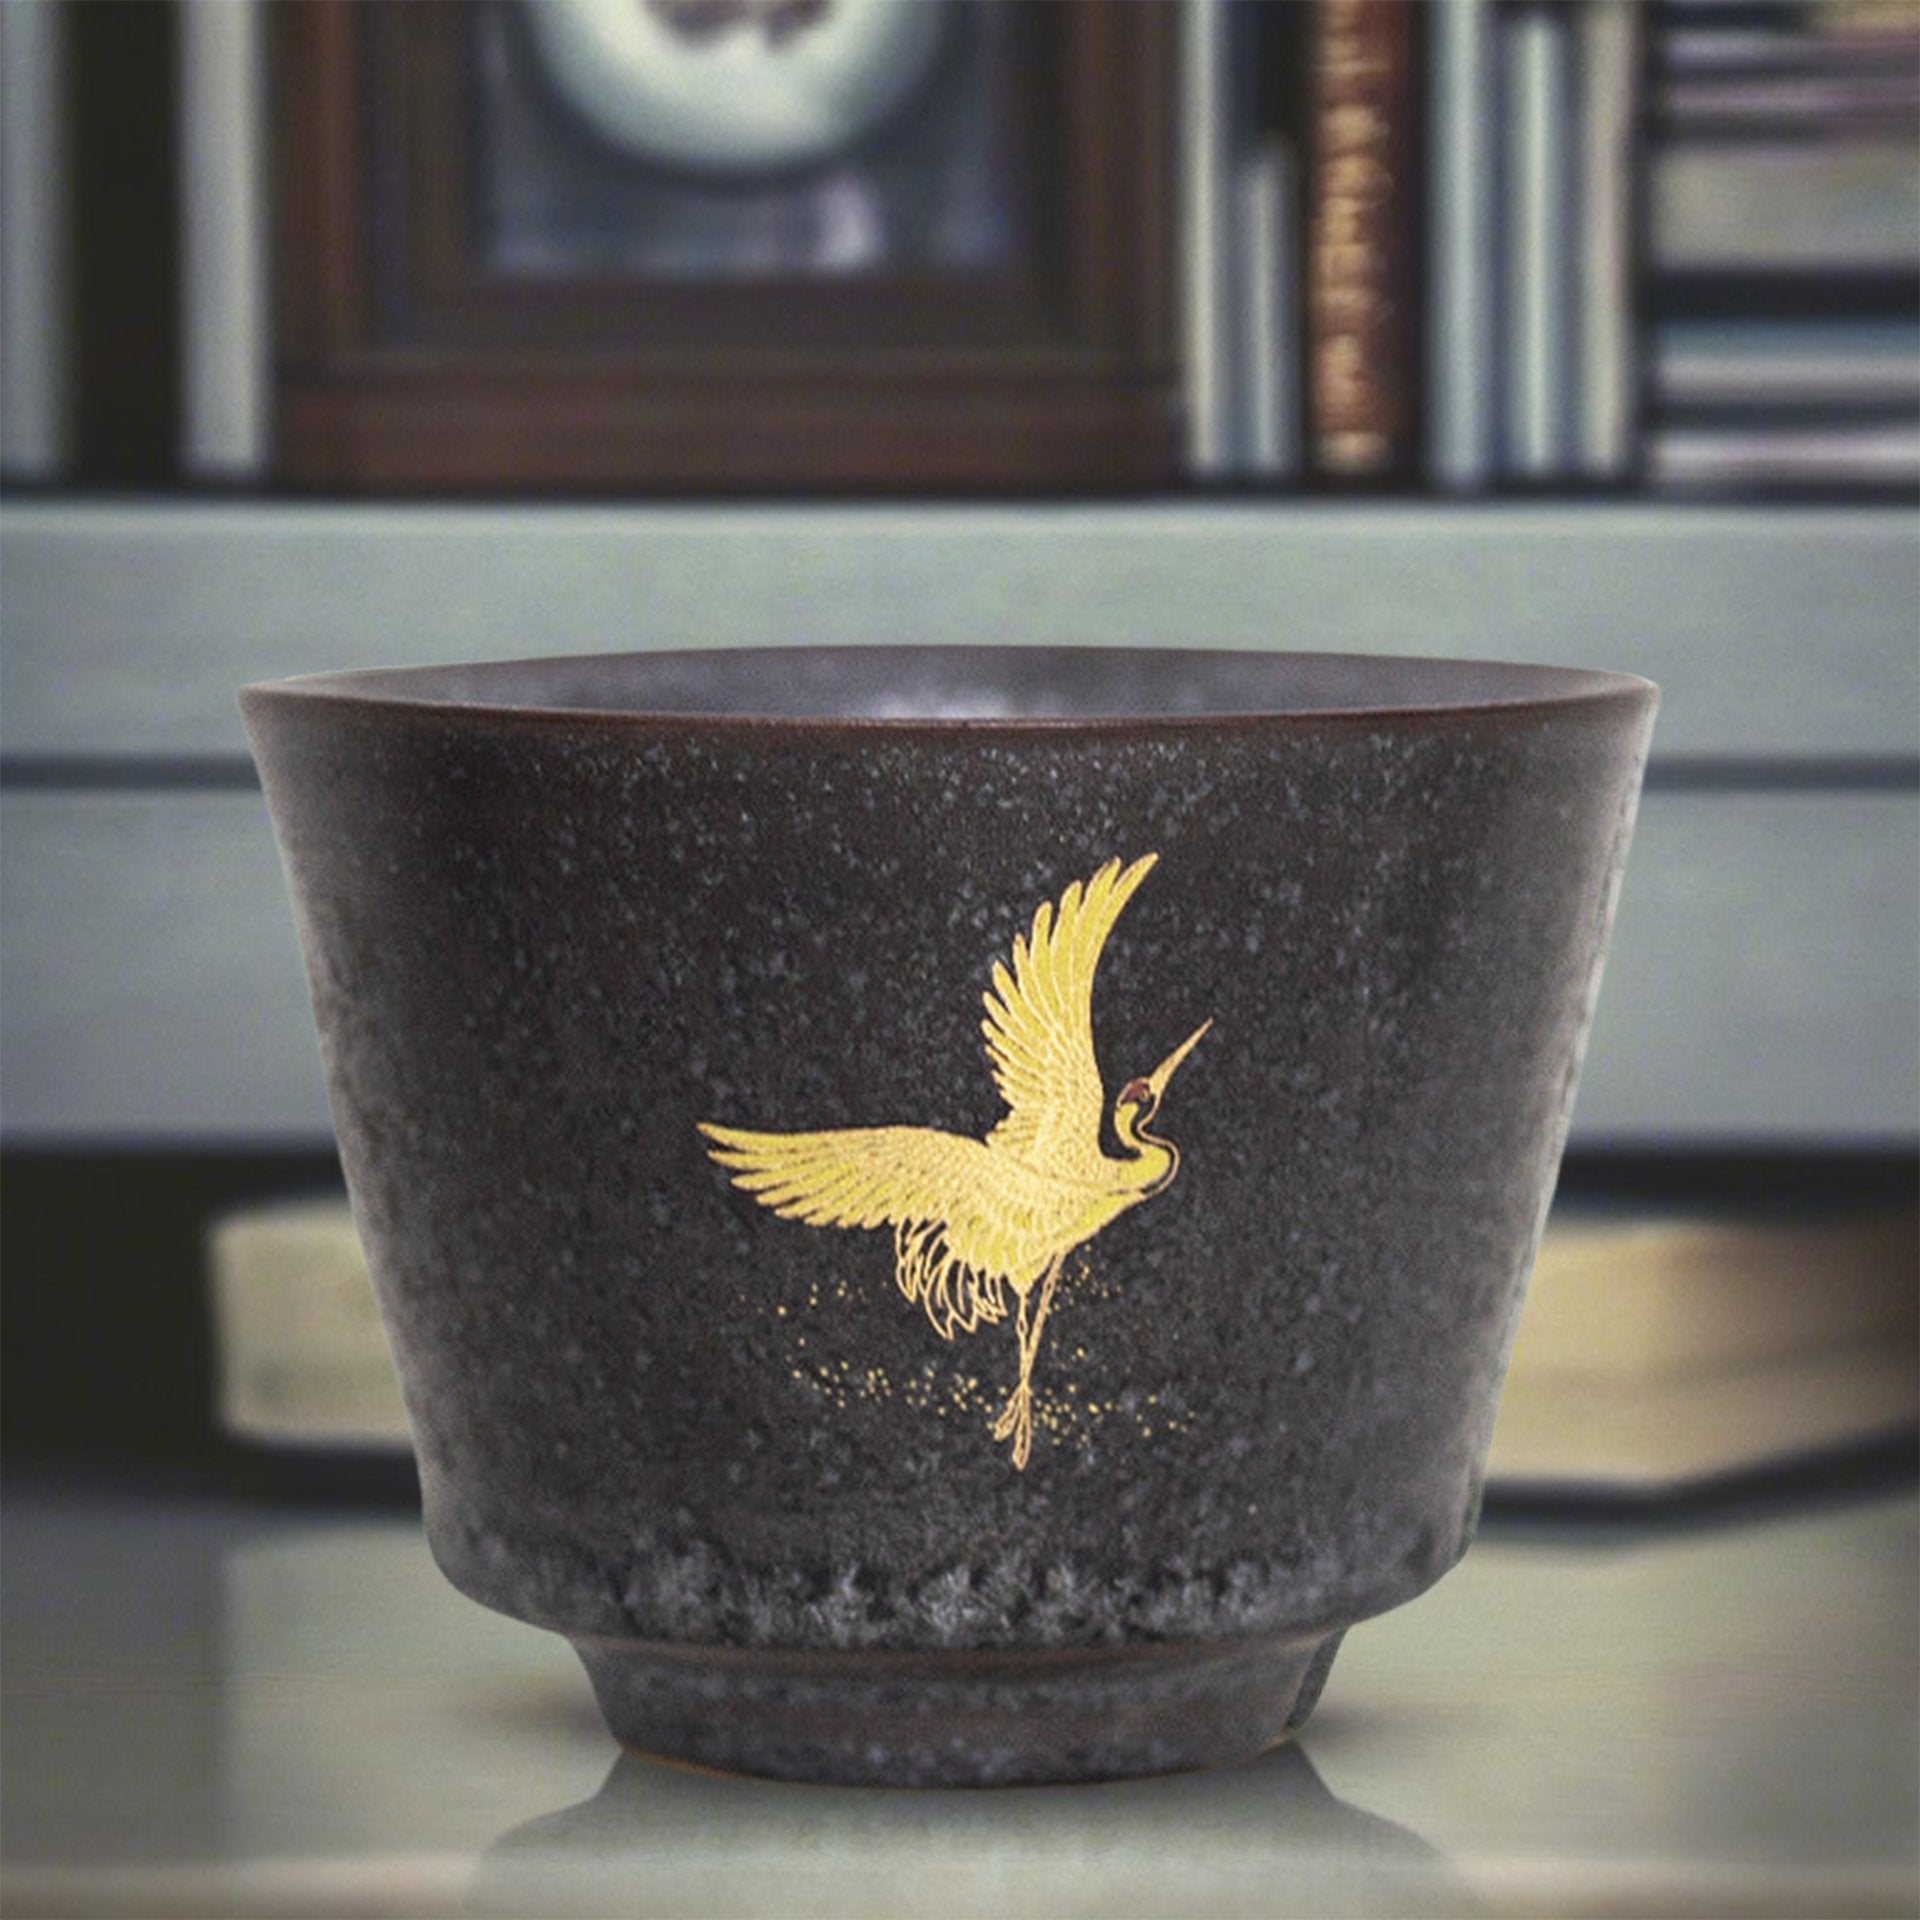 Japanese Tea Cup Set - Golden Crane